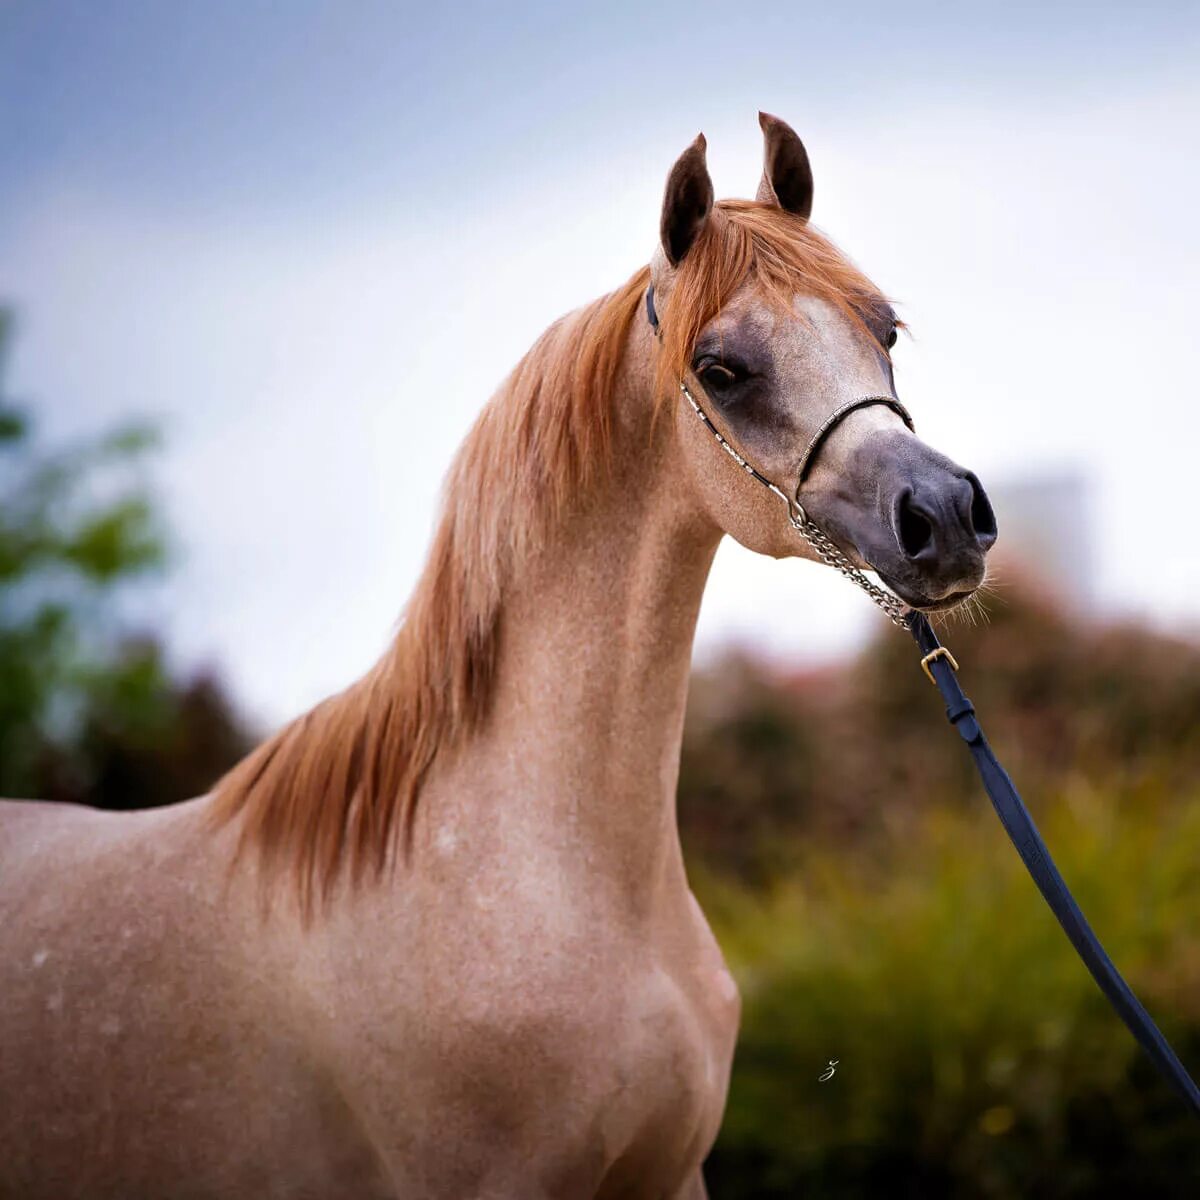 Арабская лошадь (арабская чистокровная лошадь). Арабский скакун рыжей масти. Арабская чистокровная лошадь. Арабская Скаковая порода лошадей. Арабская лошадь купить